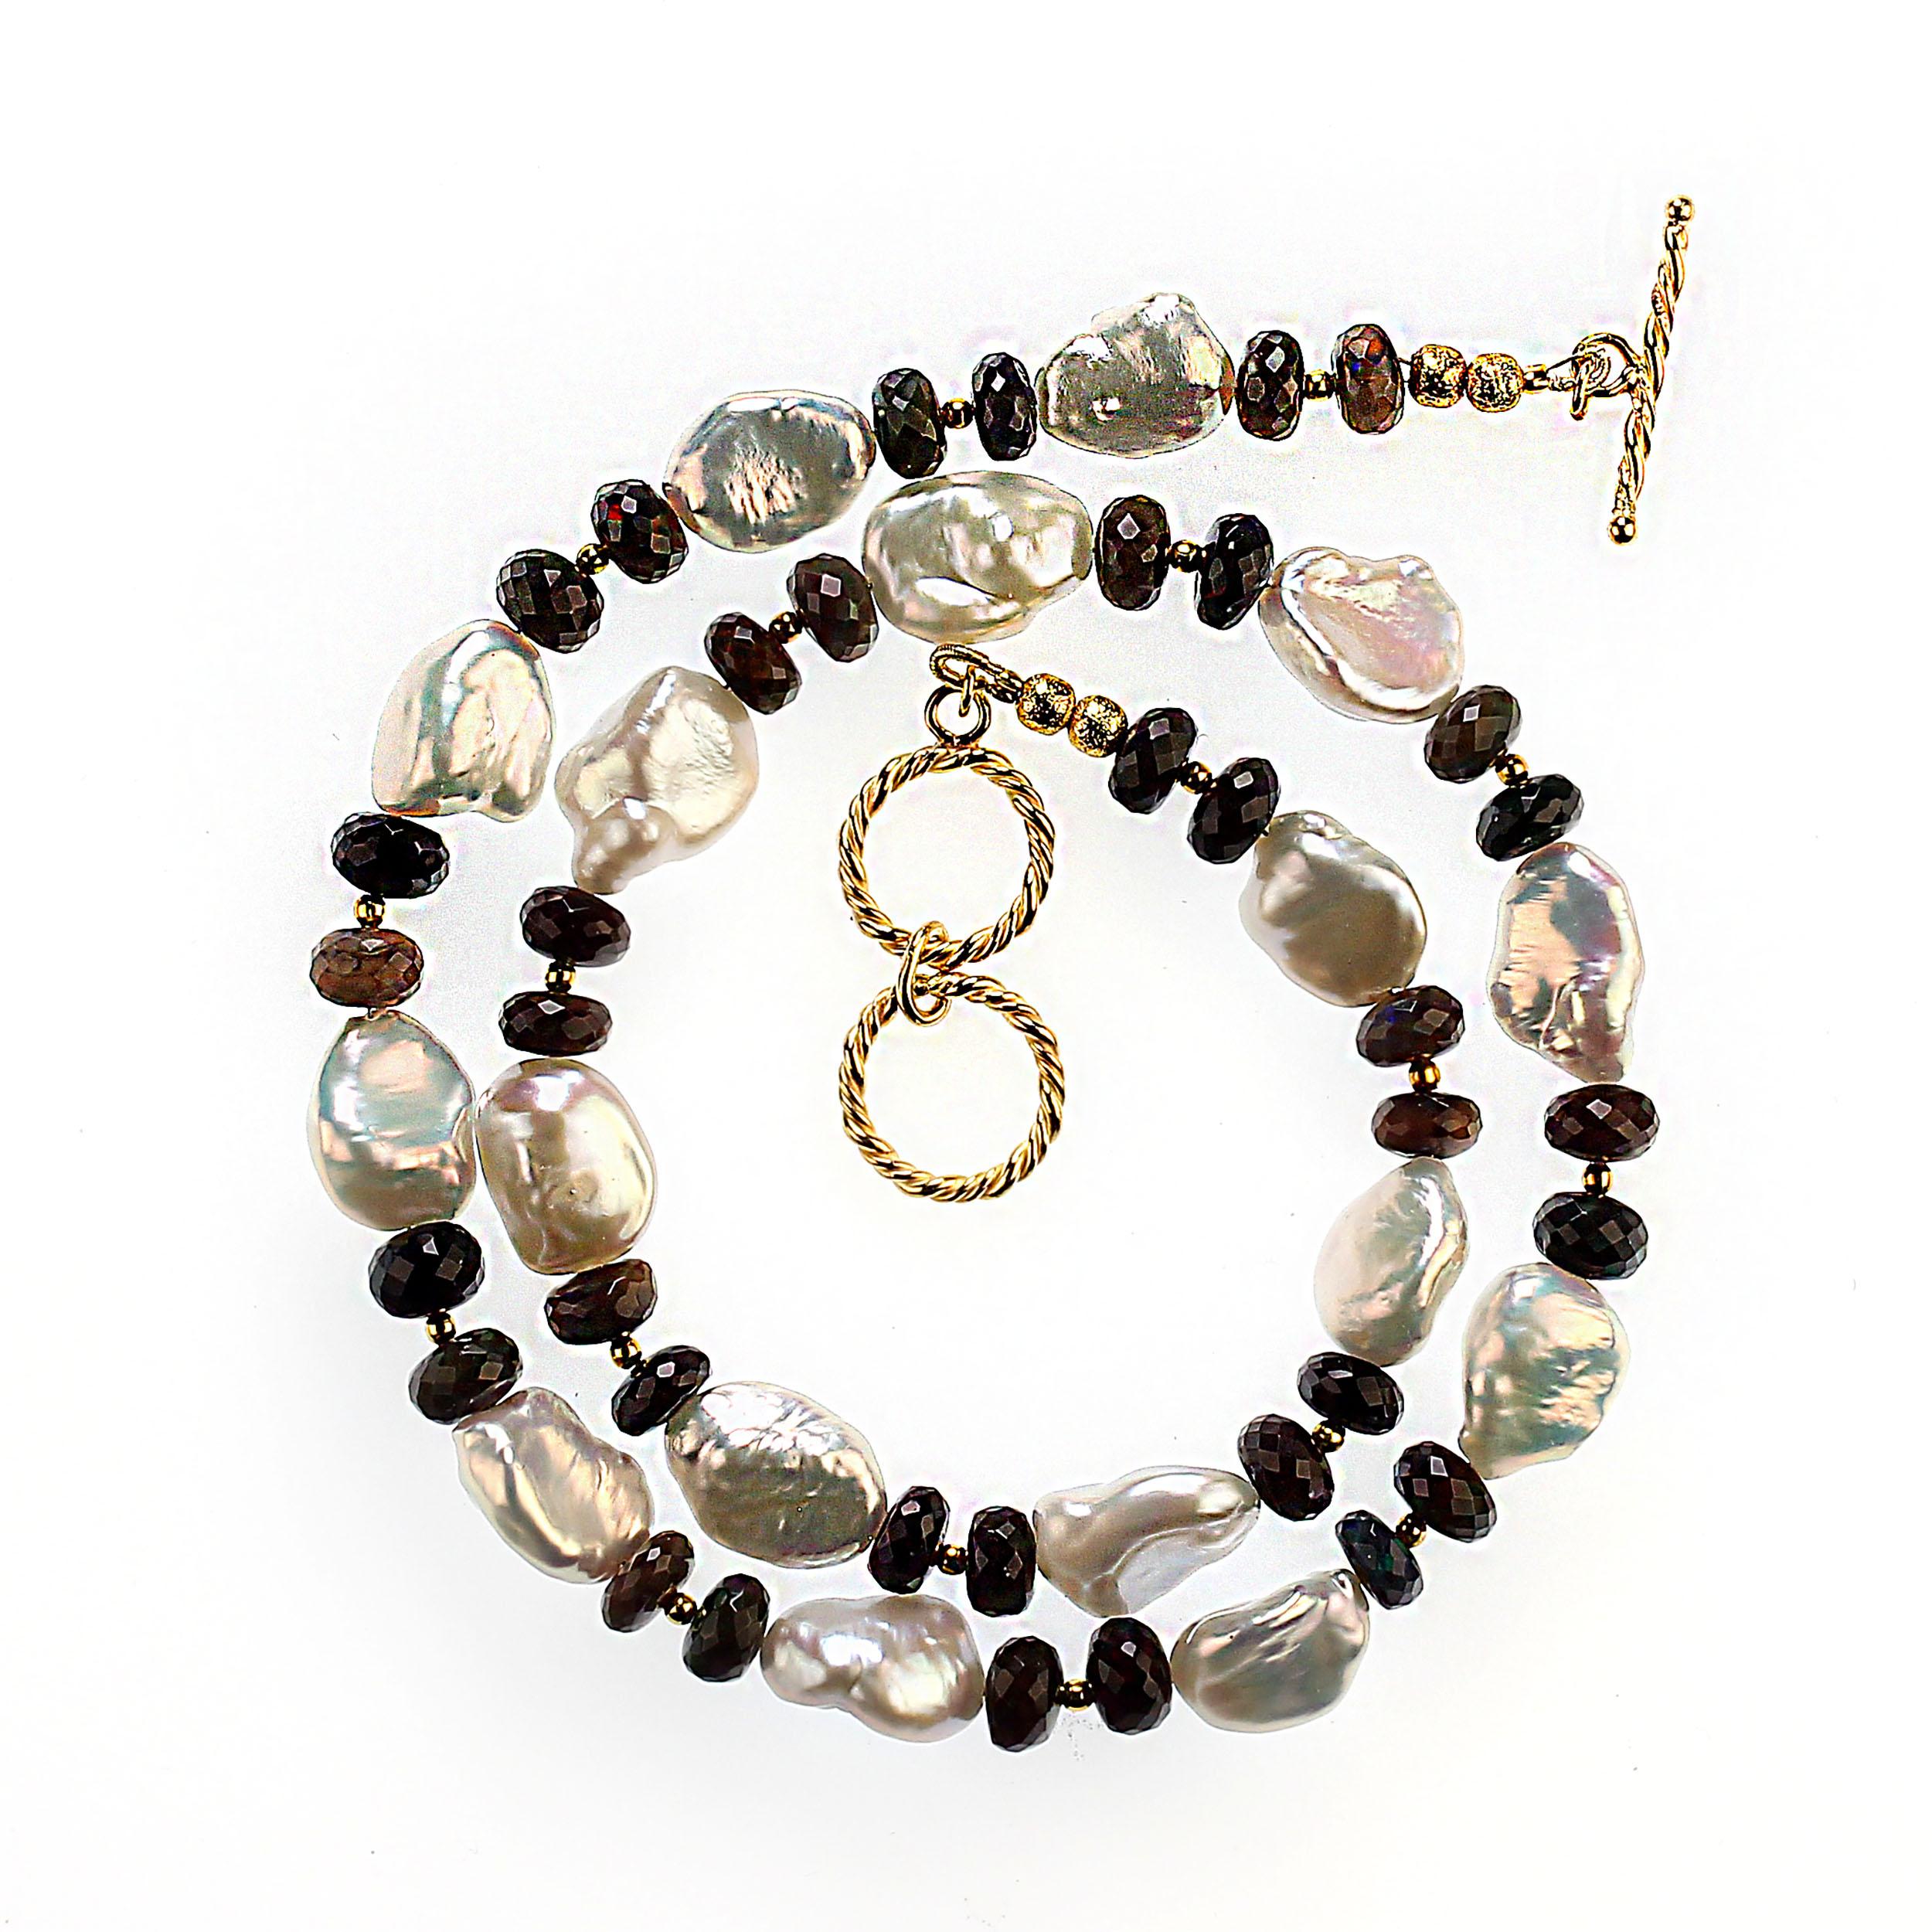 Elegant et toujours stylé, ce collier noir et blanc de 19 pouces est parfait pour toutes les occasions. Les rondelles d'opale noire font apparaître des roses et des verts. Ces jolies perles keshi de deuxième récolte irisent des éclats de rose et de